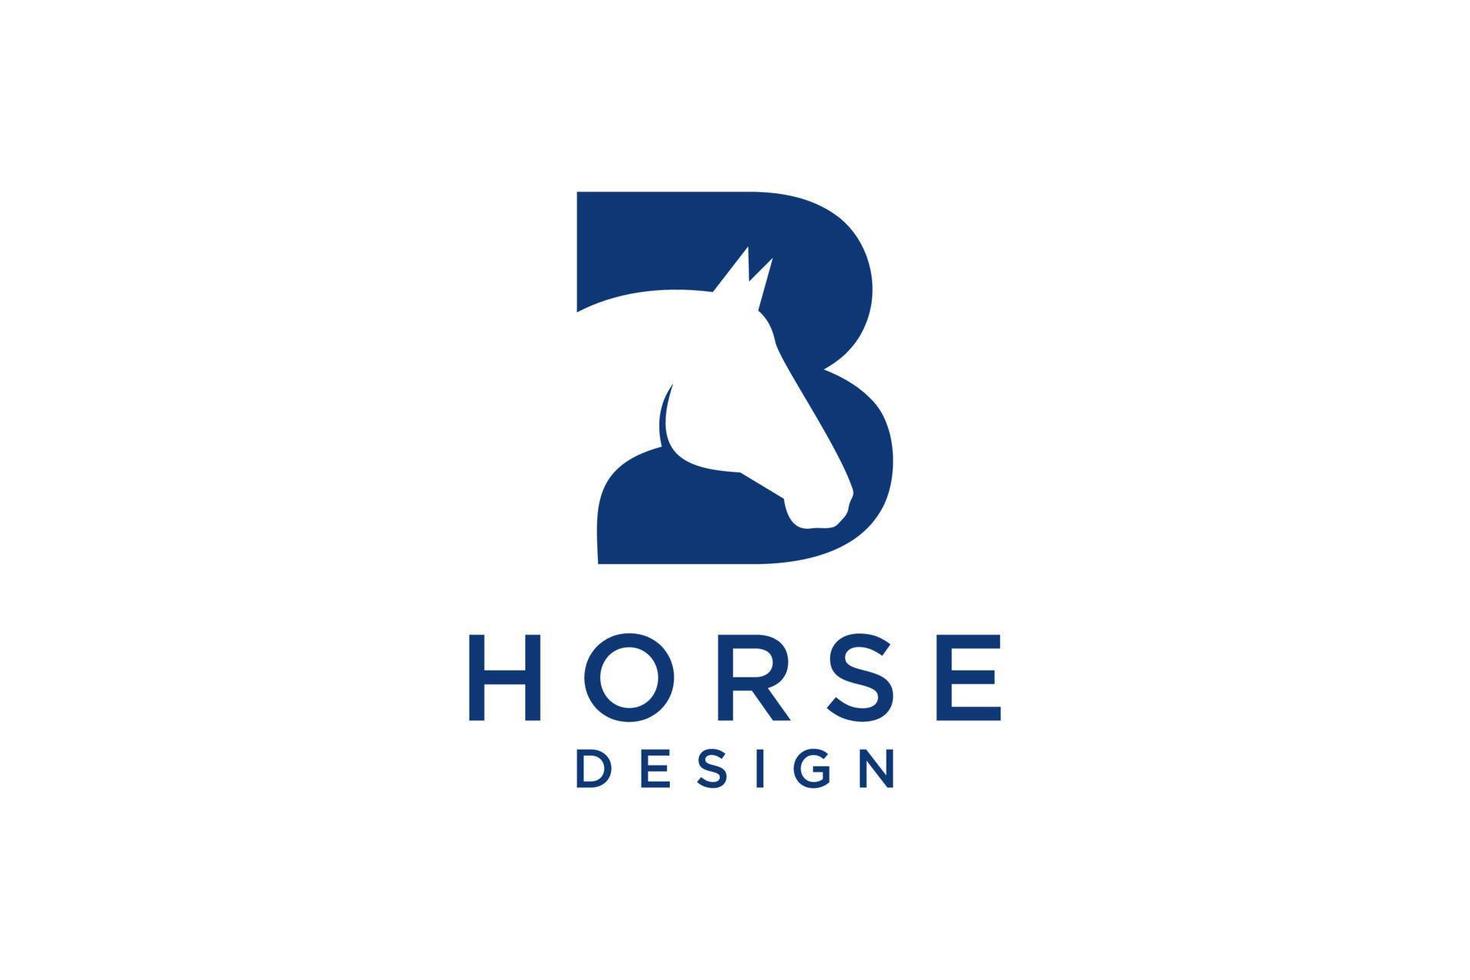 el diseño del logotipo con la letra inicial b se combina con un símbolo de cabeza de caballo moderno y profesional vector